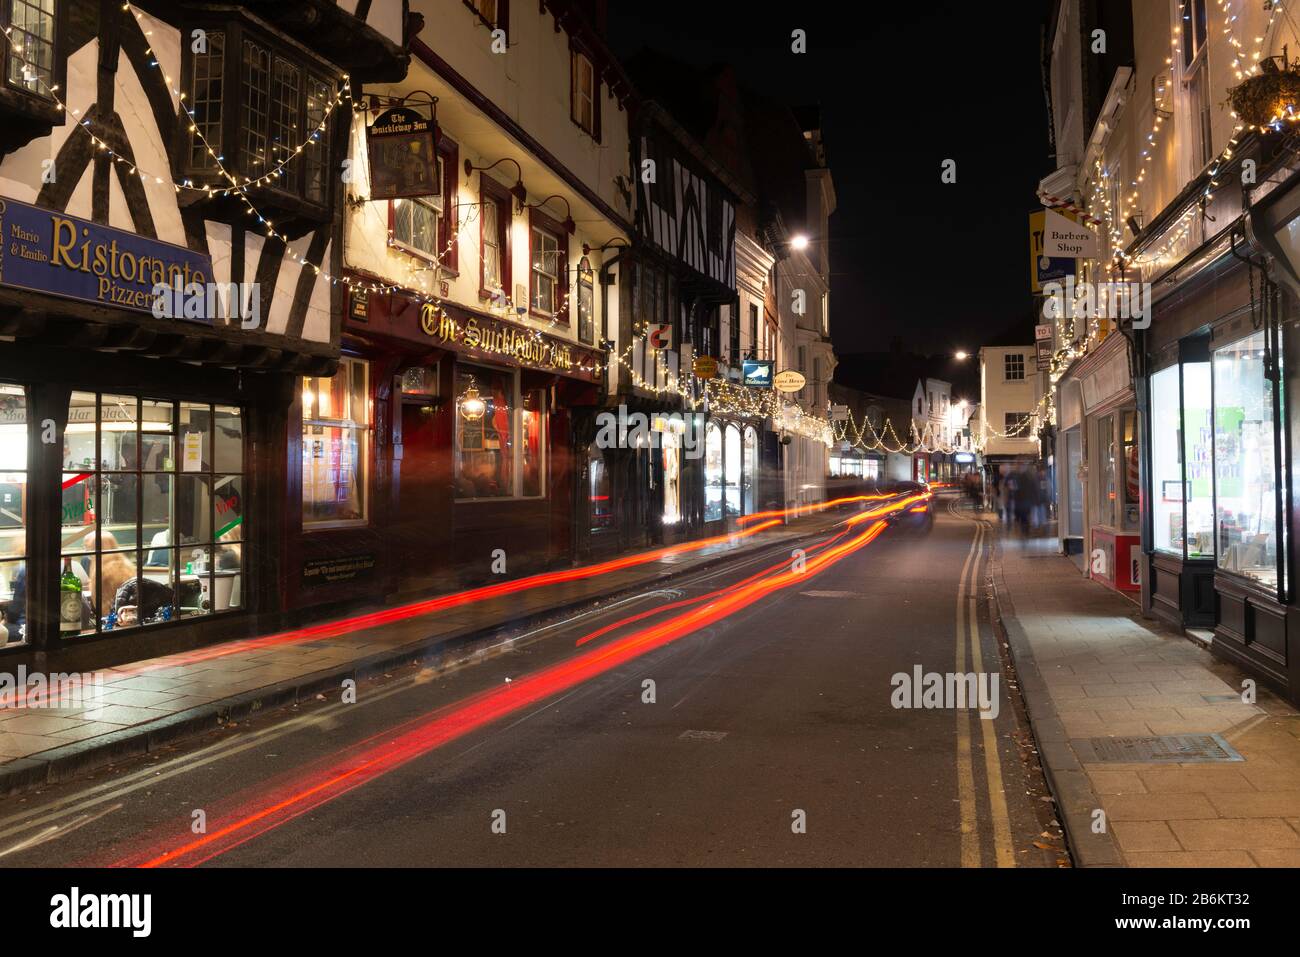 Goodramgate, York zu Weihnachten: Eine der Haupteinkaufsstraßen Yorks nachts während der Festtage Stockfoto